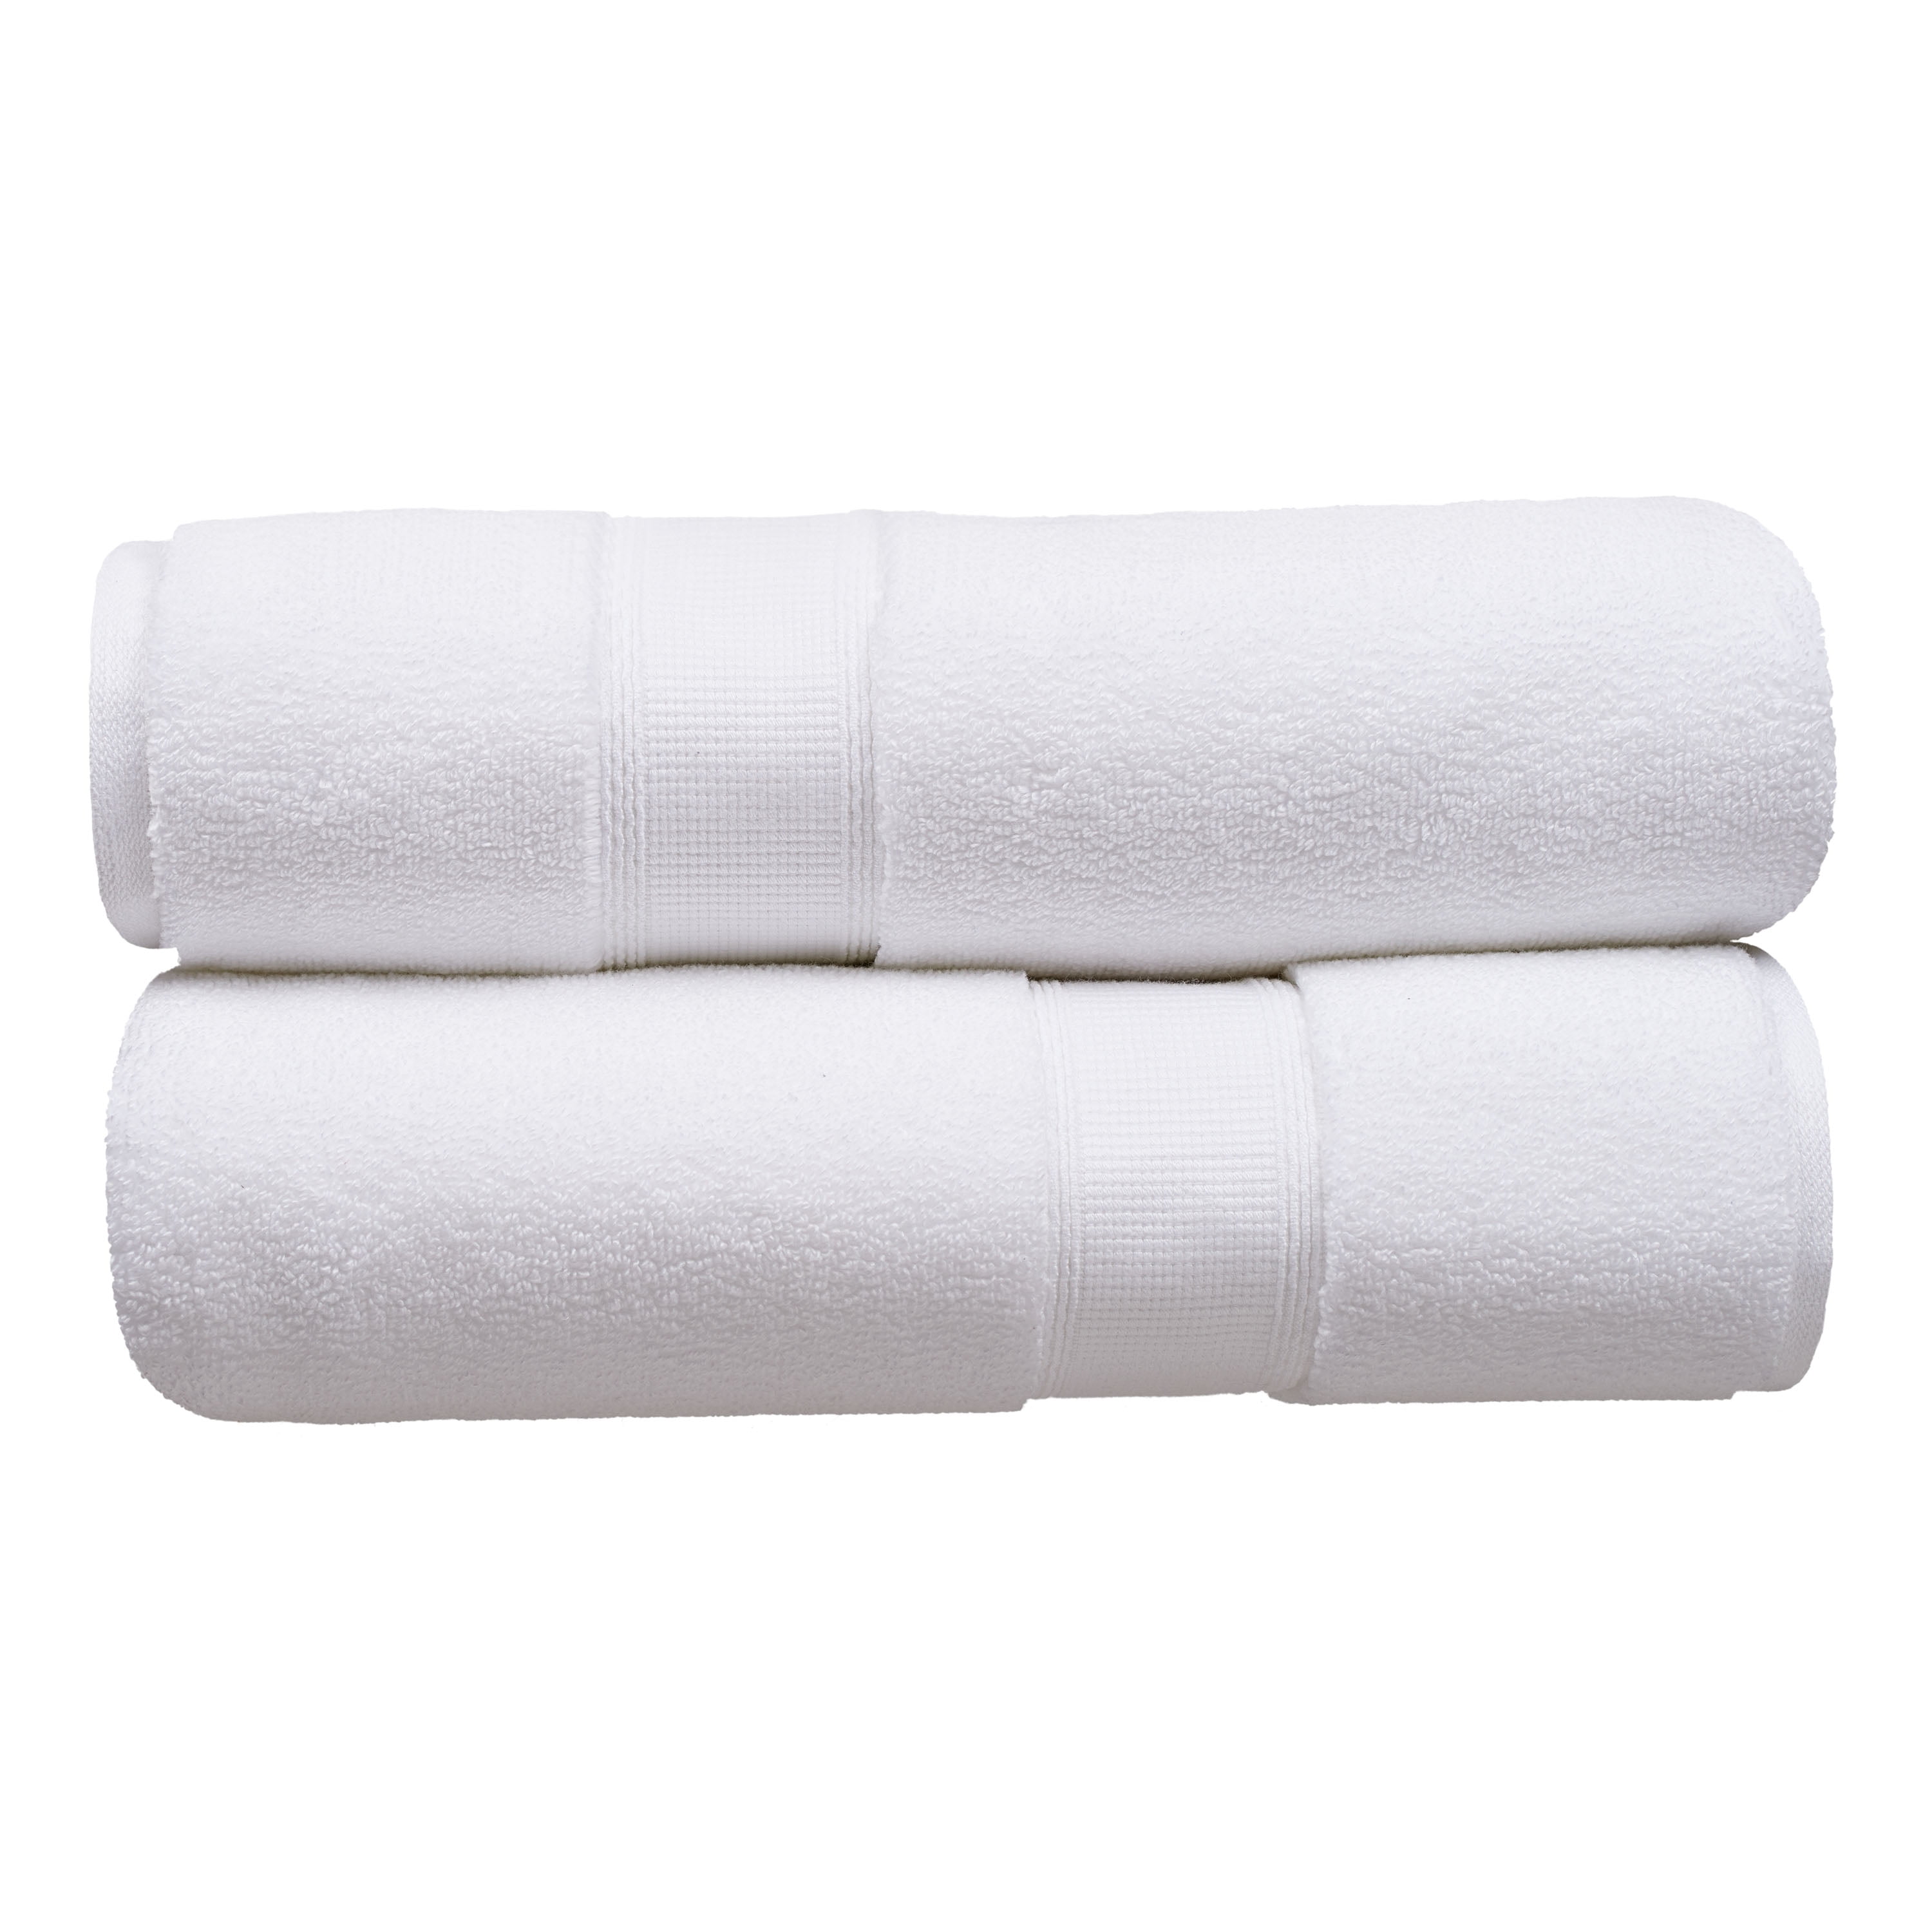 White Spa Modal & Cotton Blend Bath Towel, 30x58